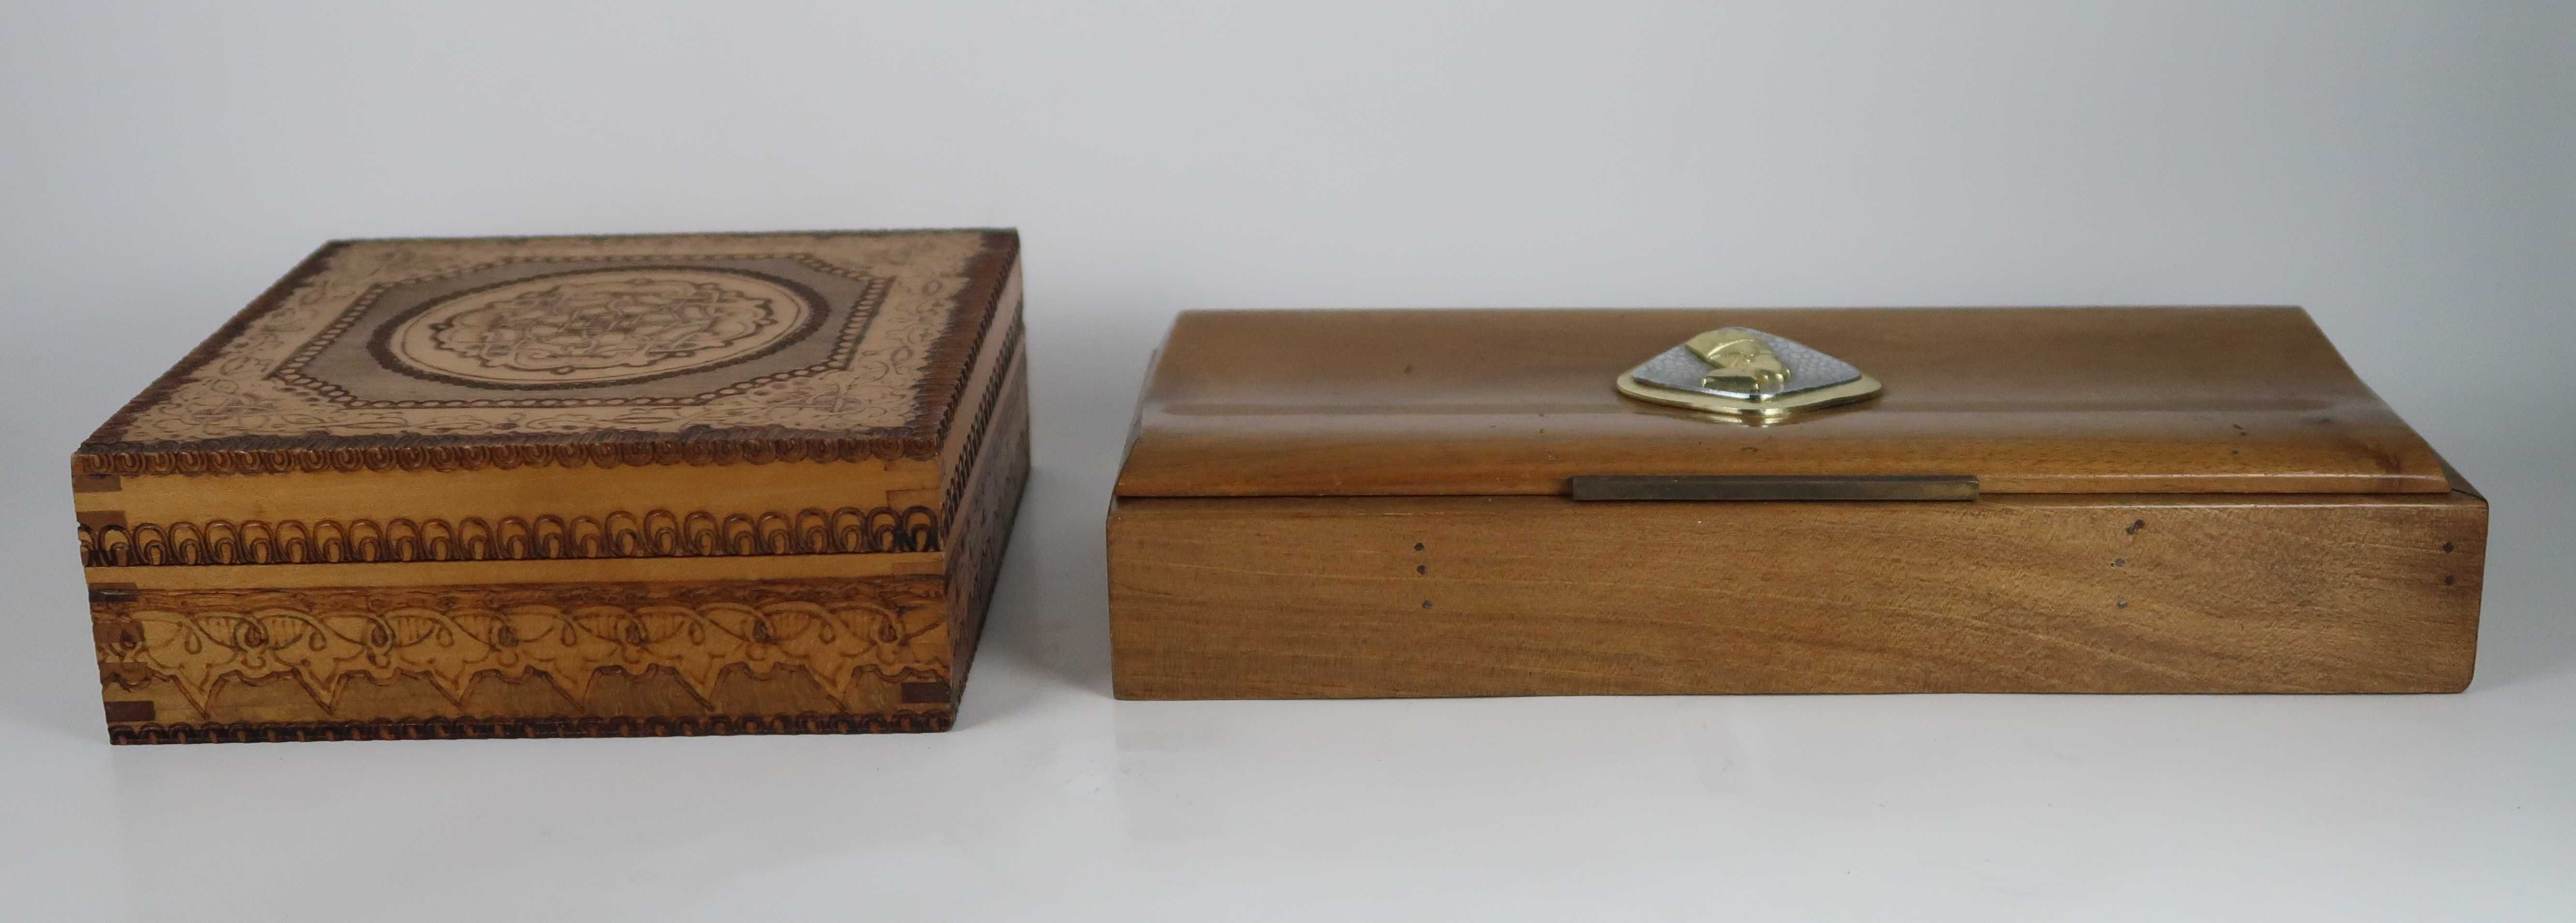 4 caixas antigas em madeira